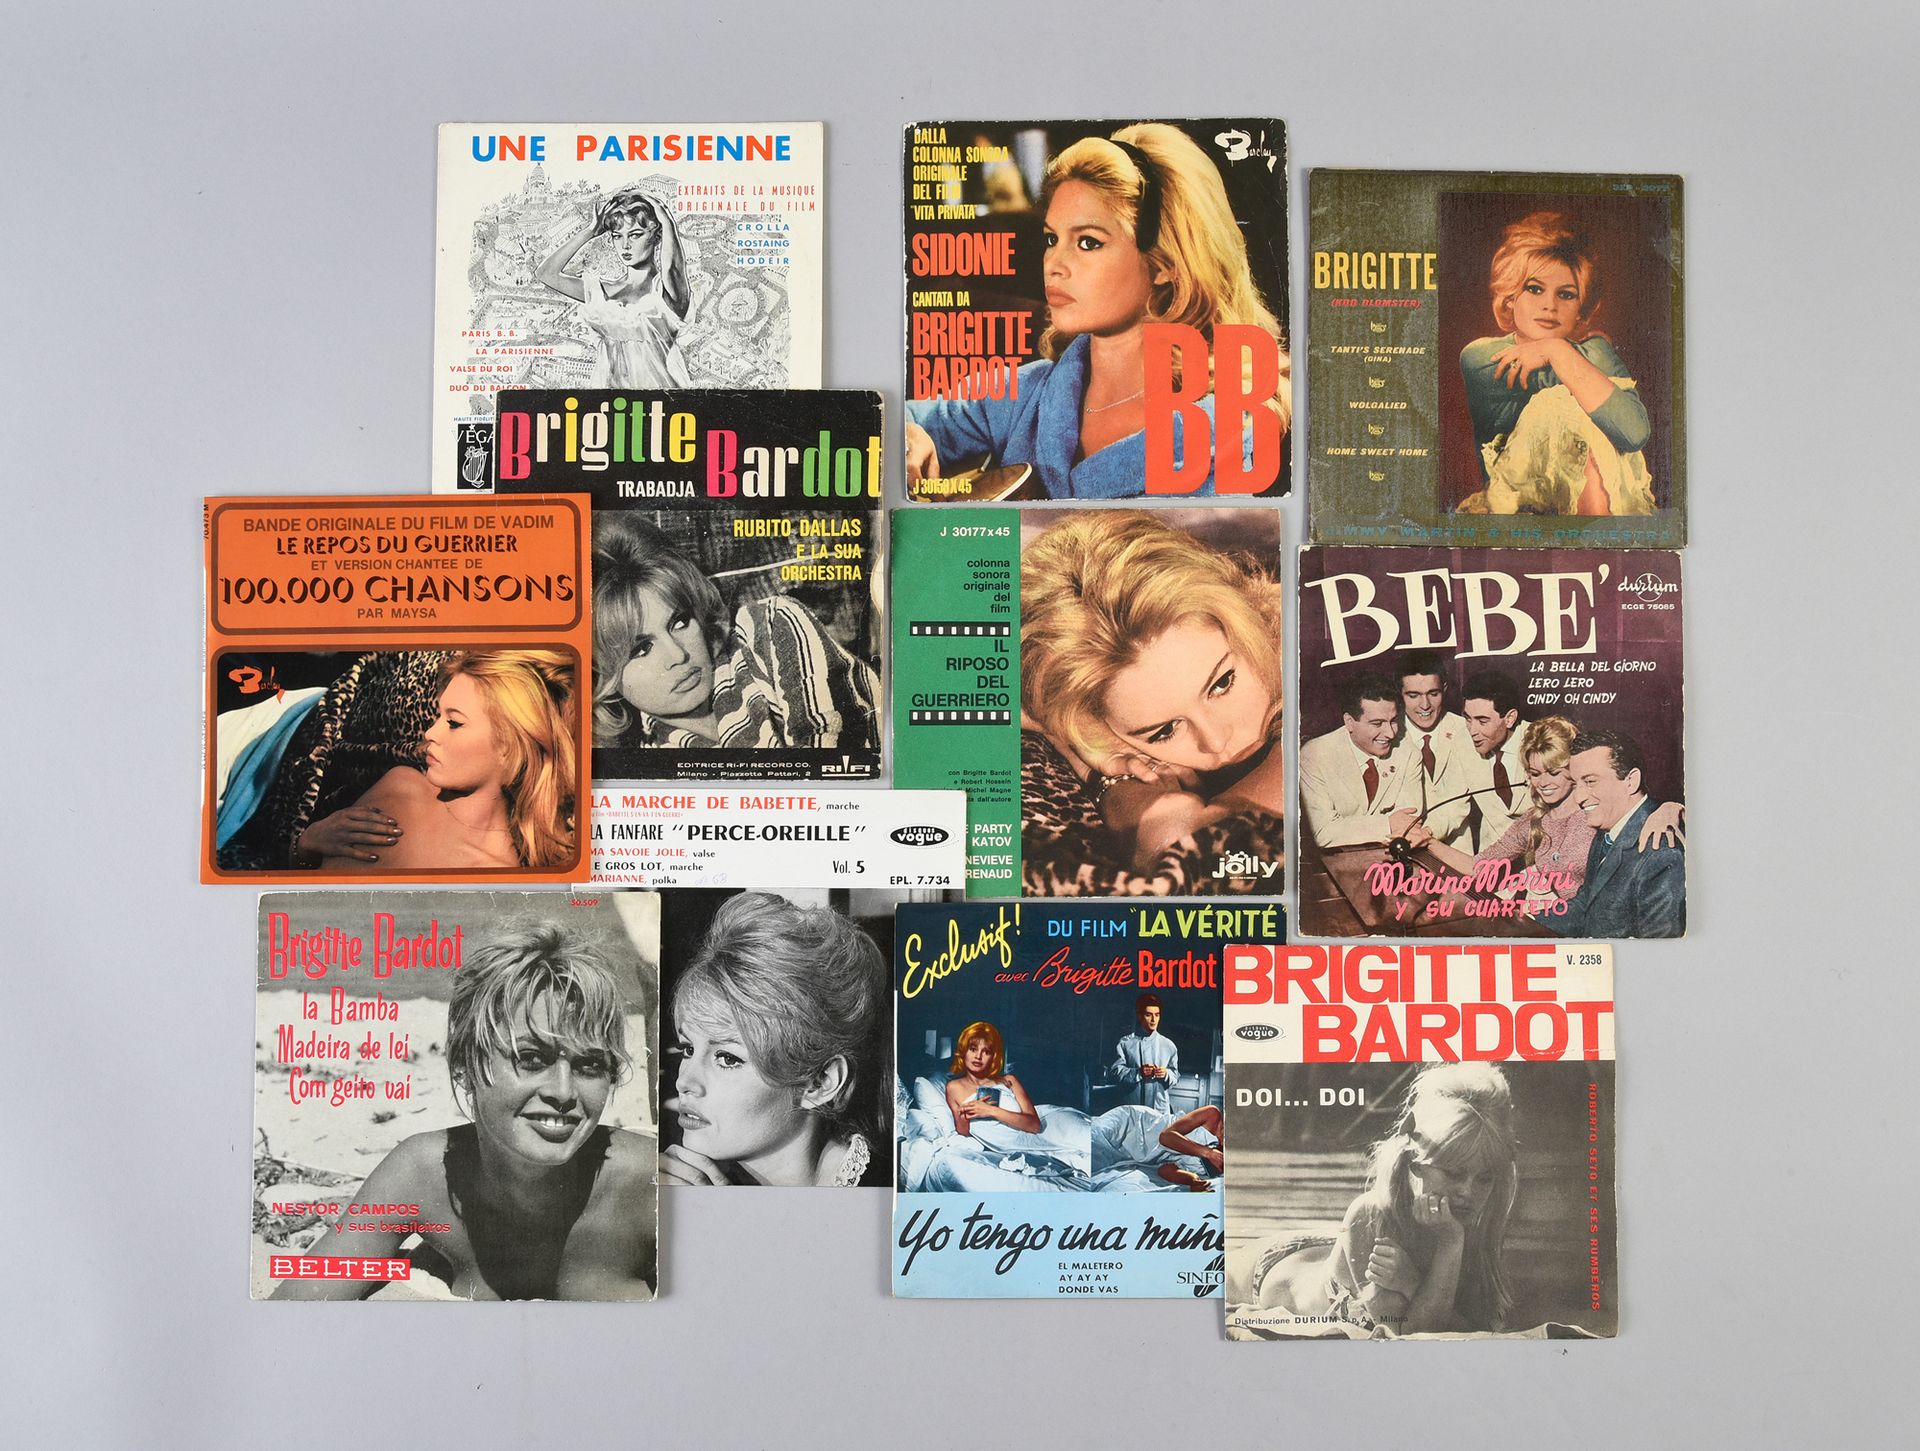 Null 布里吉特-巴多（1934）。女演员和歌手。1套11张碧姬-芭铎的45转黑胶唱片，在不同国家发行：意大利、西班牙、美国和法国。